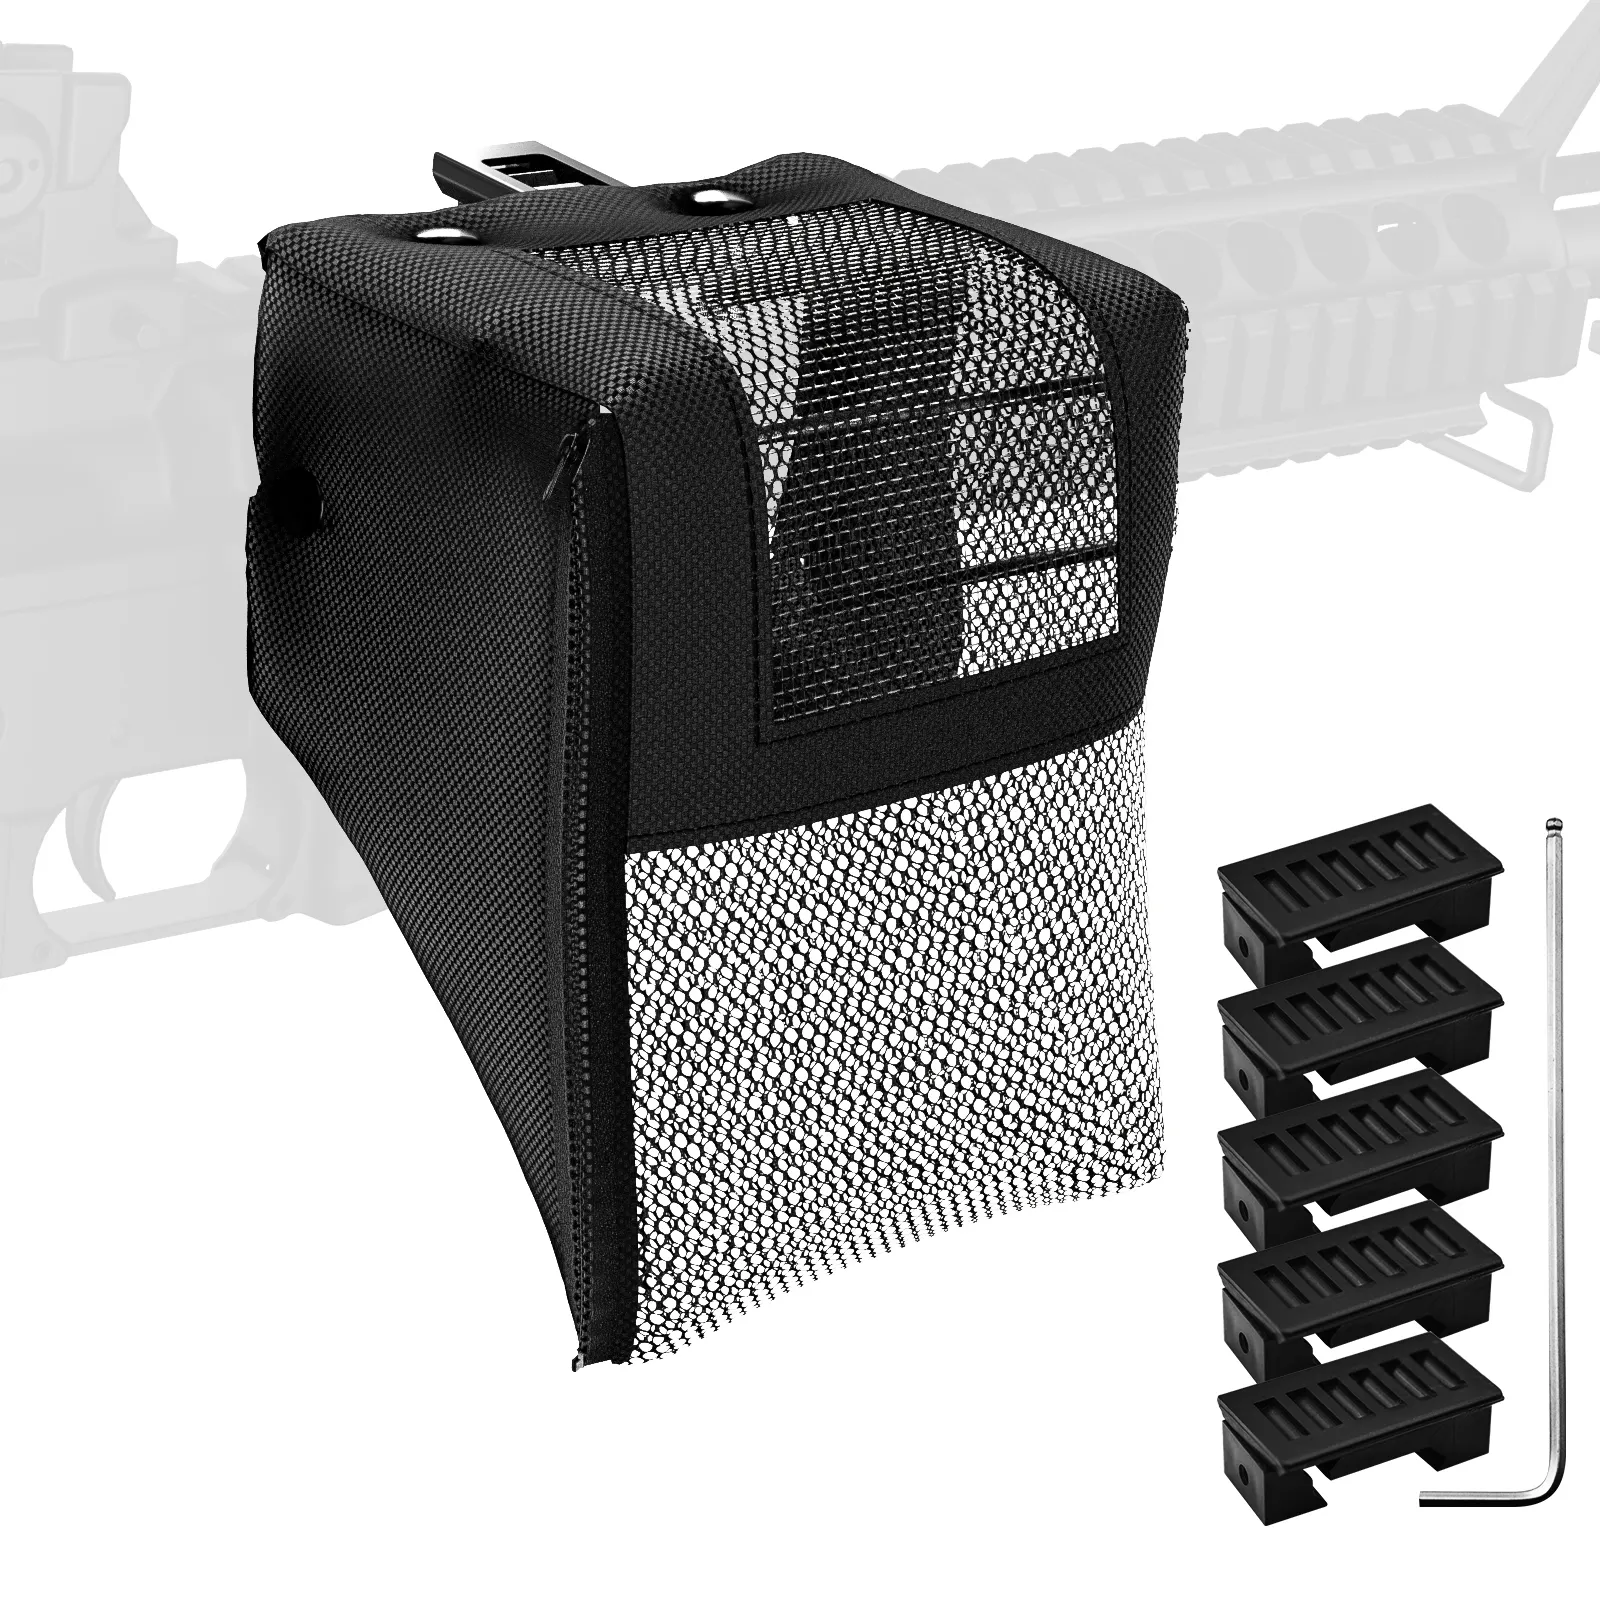 가이드 레일, 히트 네트 및 기타 총기 장착 가이드 레일에 장착 된 카트리지 수집기 용 황동 포수